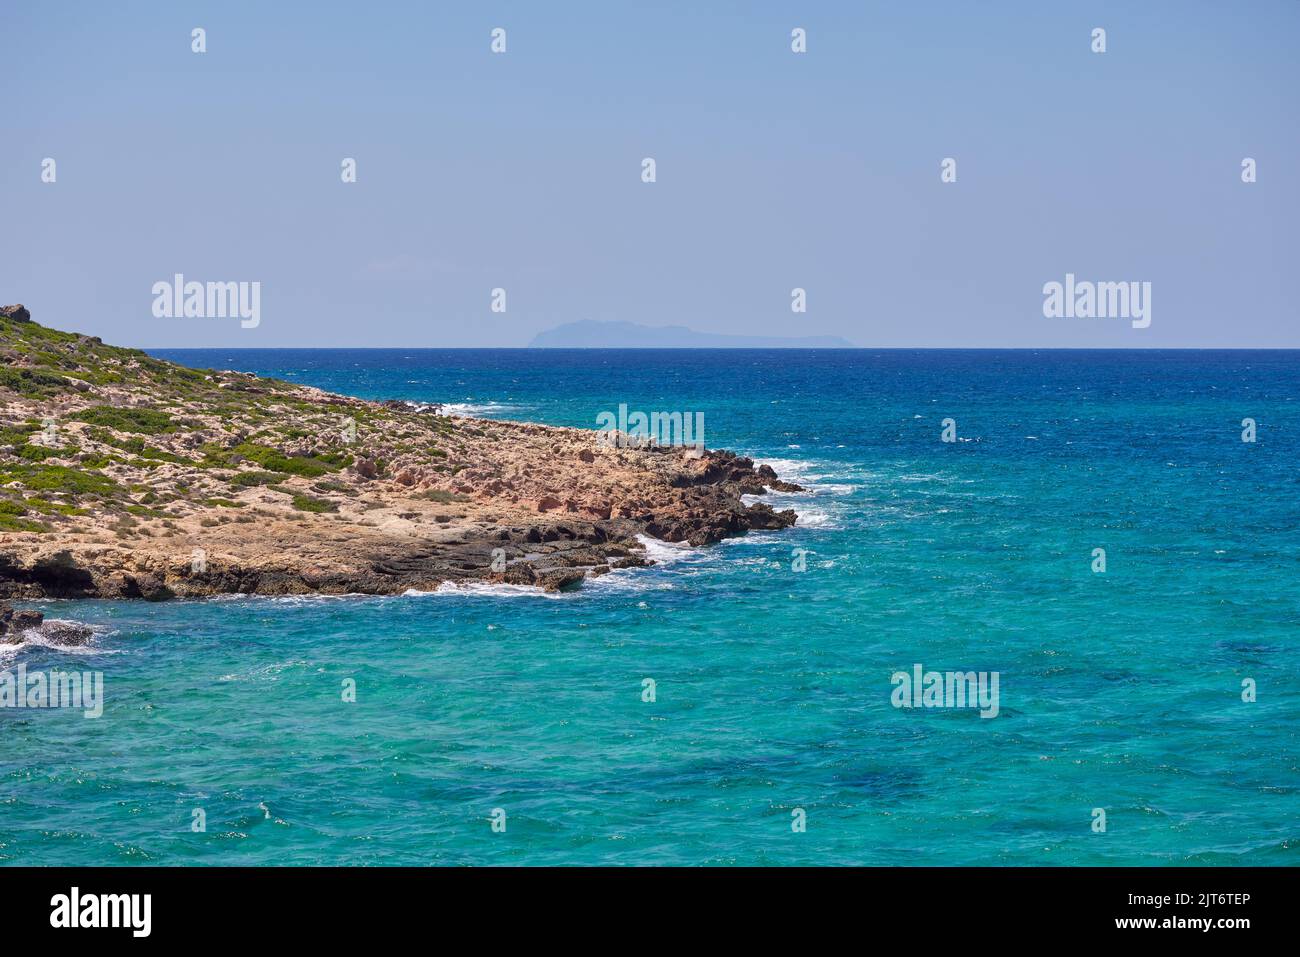 Increíble paisaje de las islas griegas - Bahía de Balos con las mejores playas y mar turquesa Foto de stock